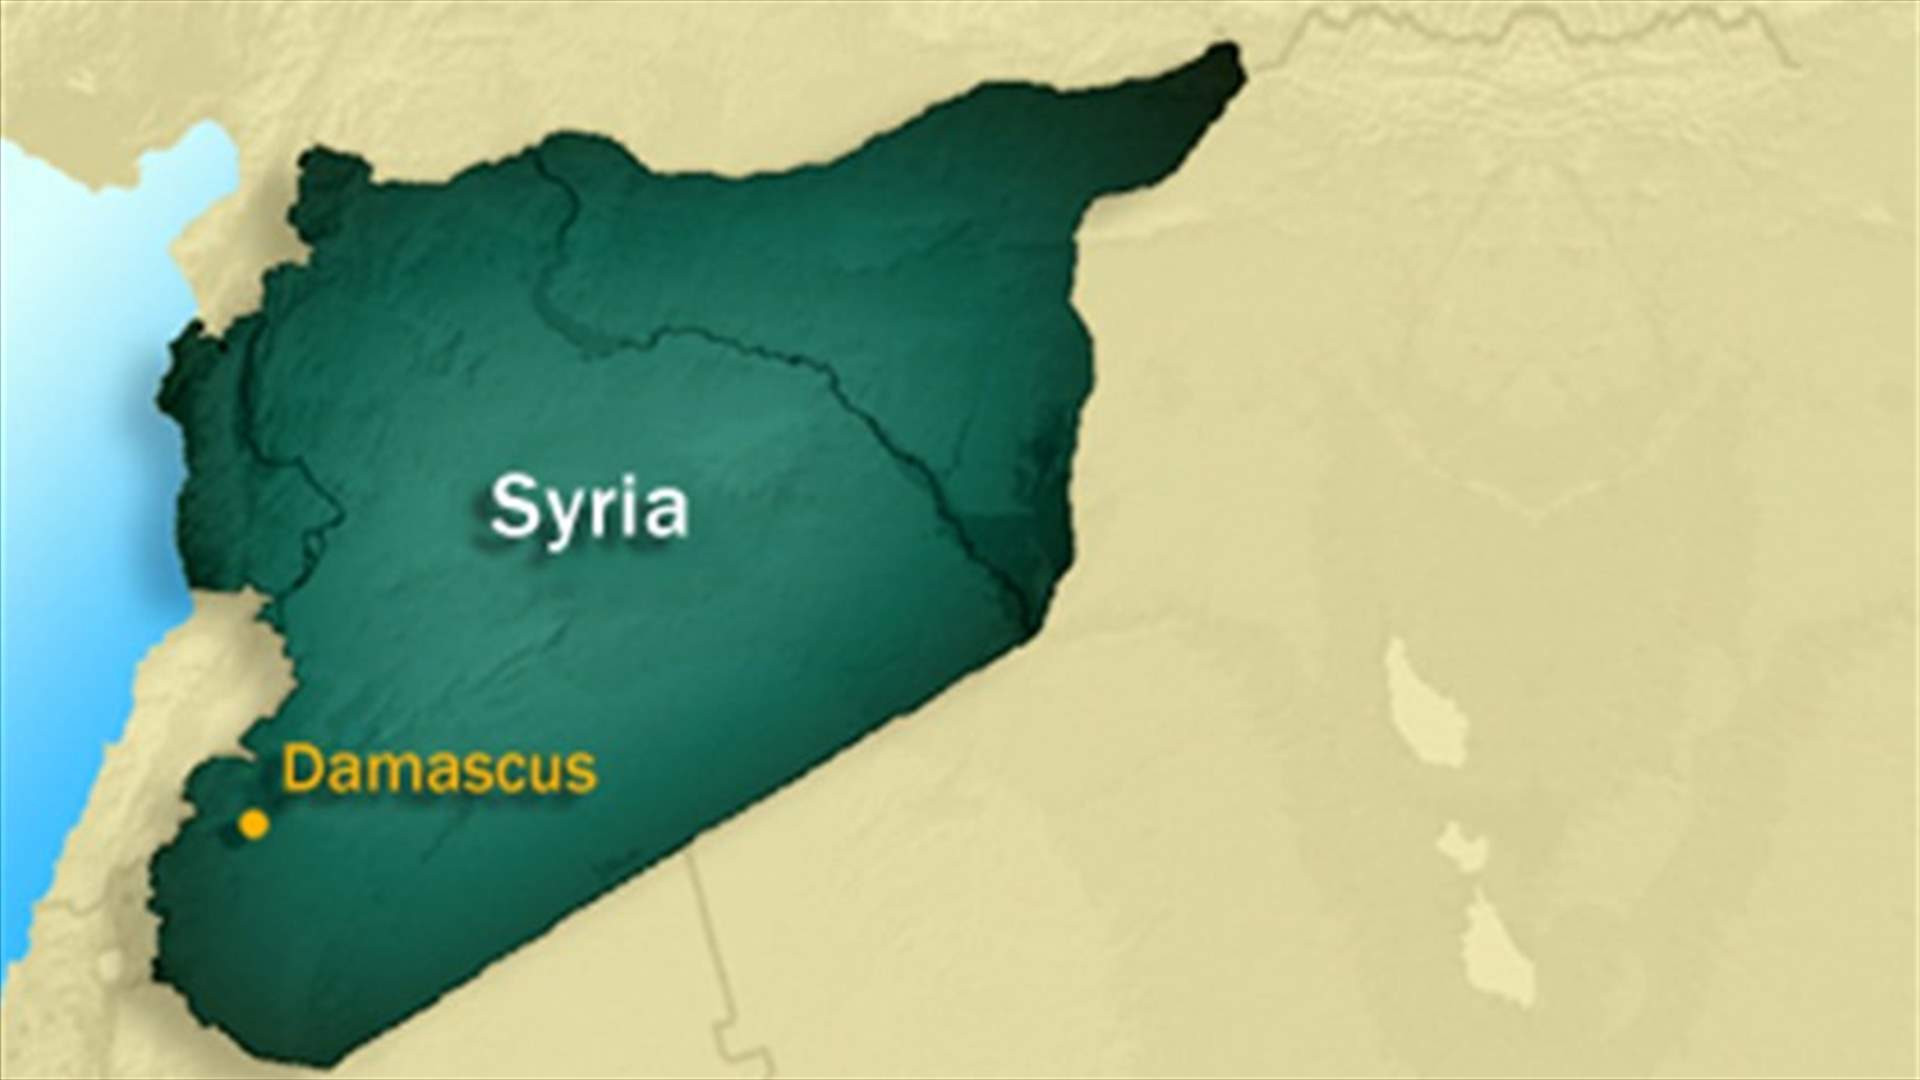 UN monitors reach massacre scene in Syria